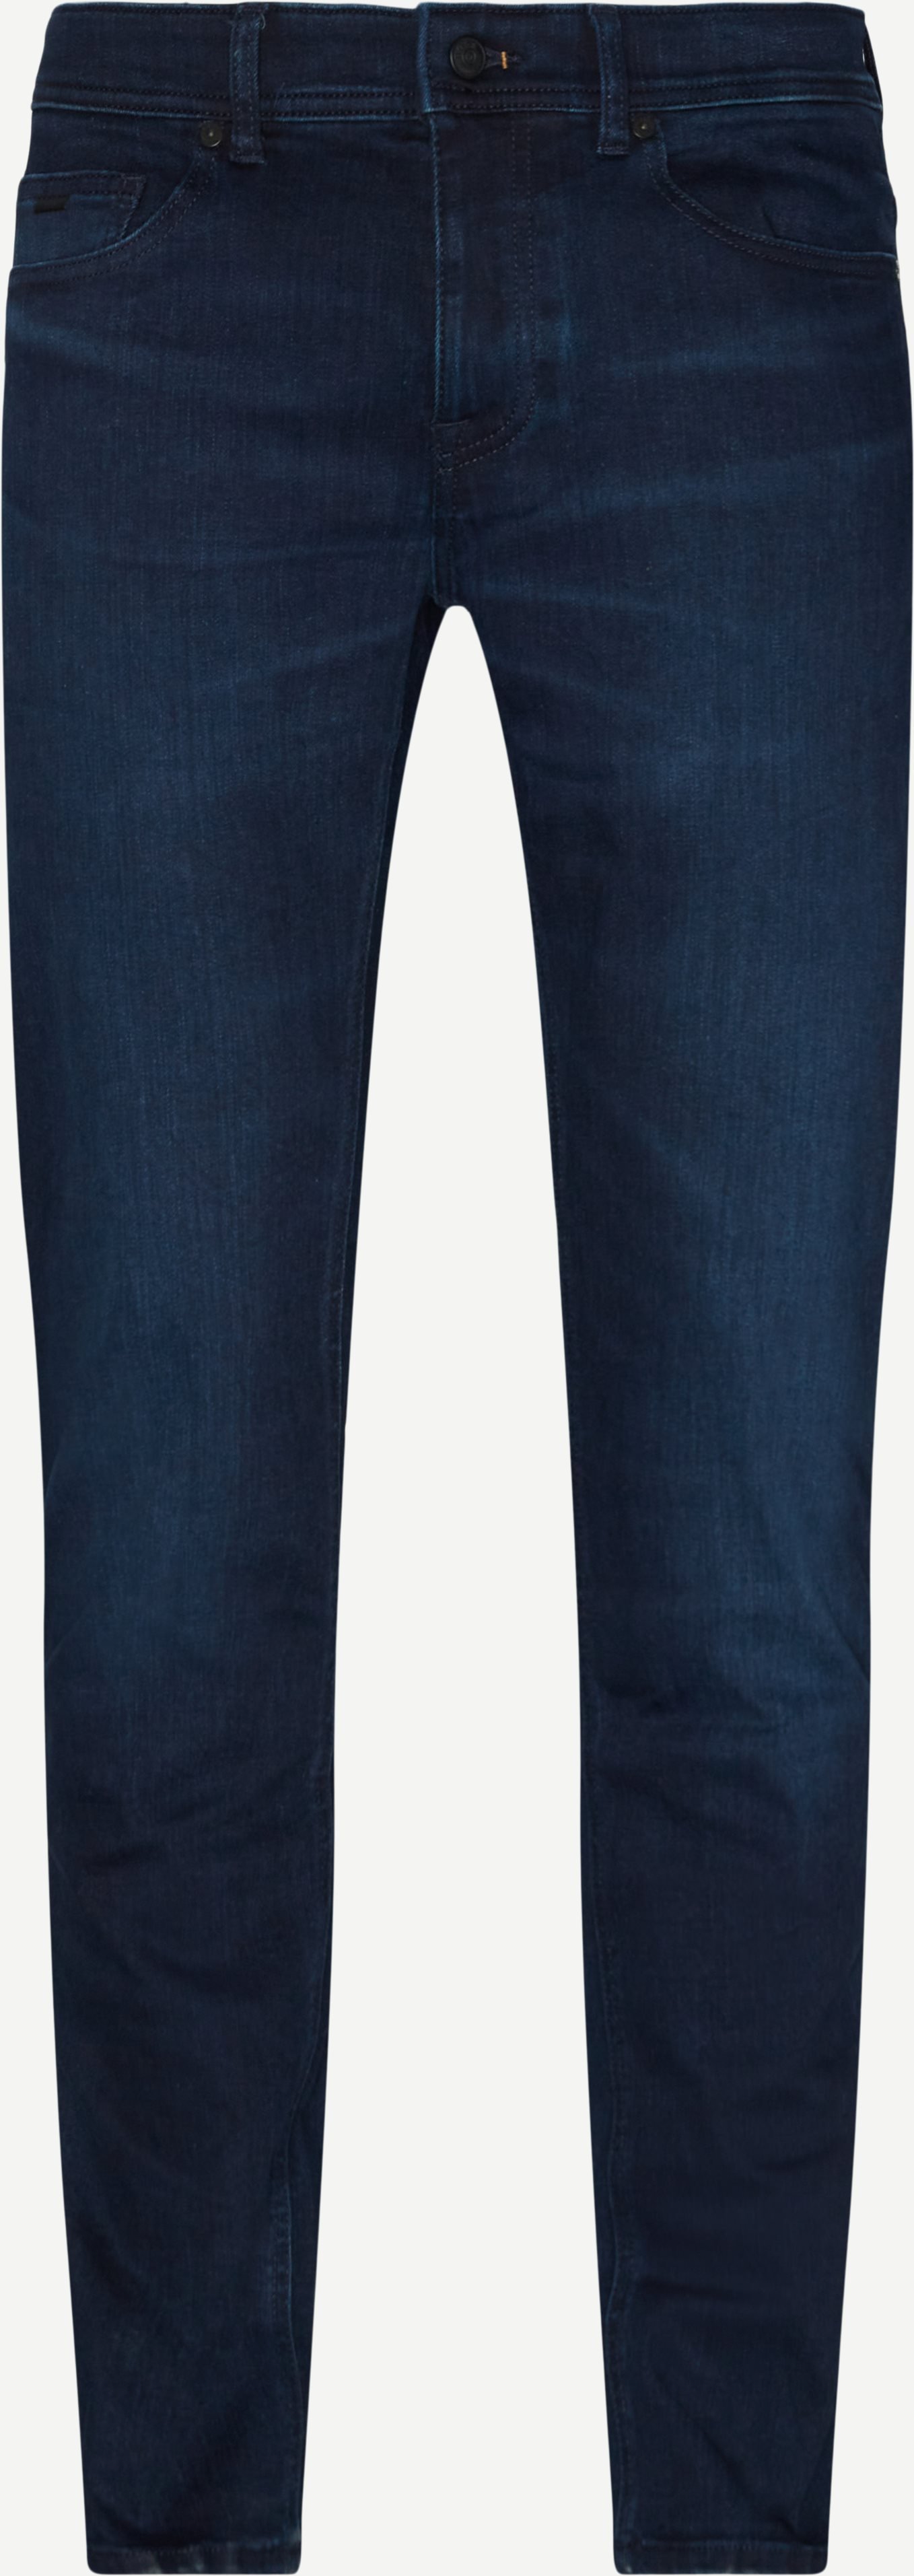 Delaware BC-LP steht für Jeans - Jeans - Slim fit - Jeans-Blau